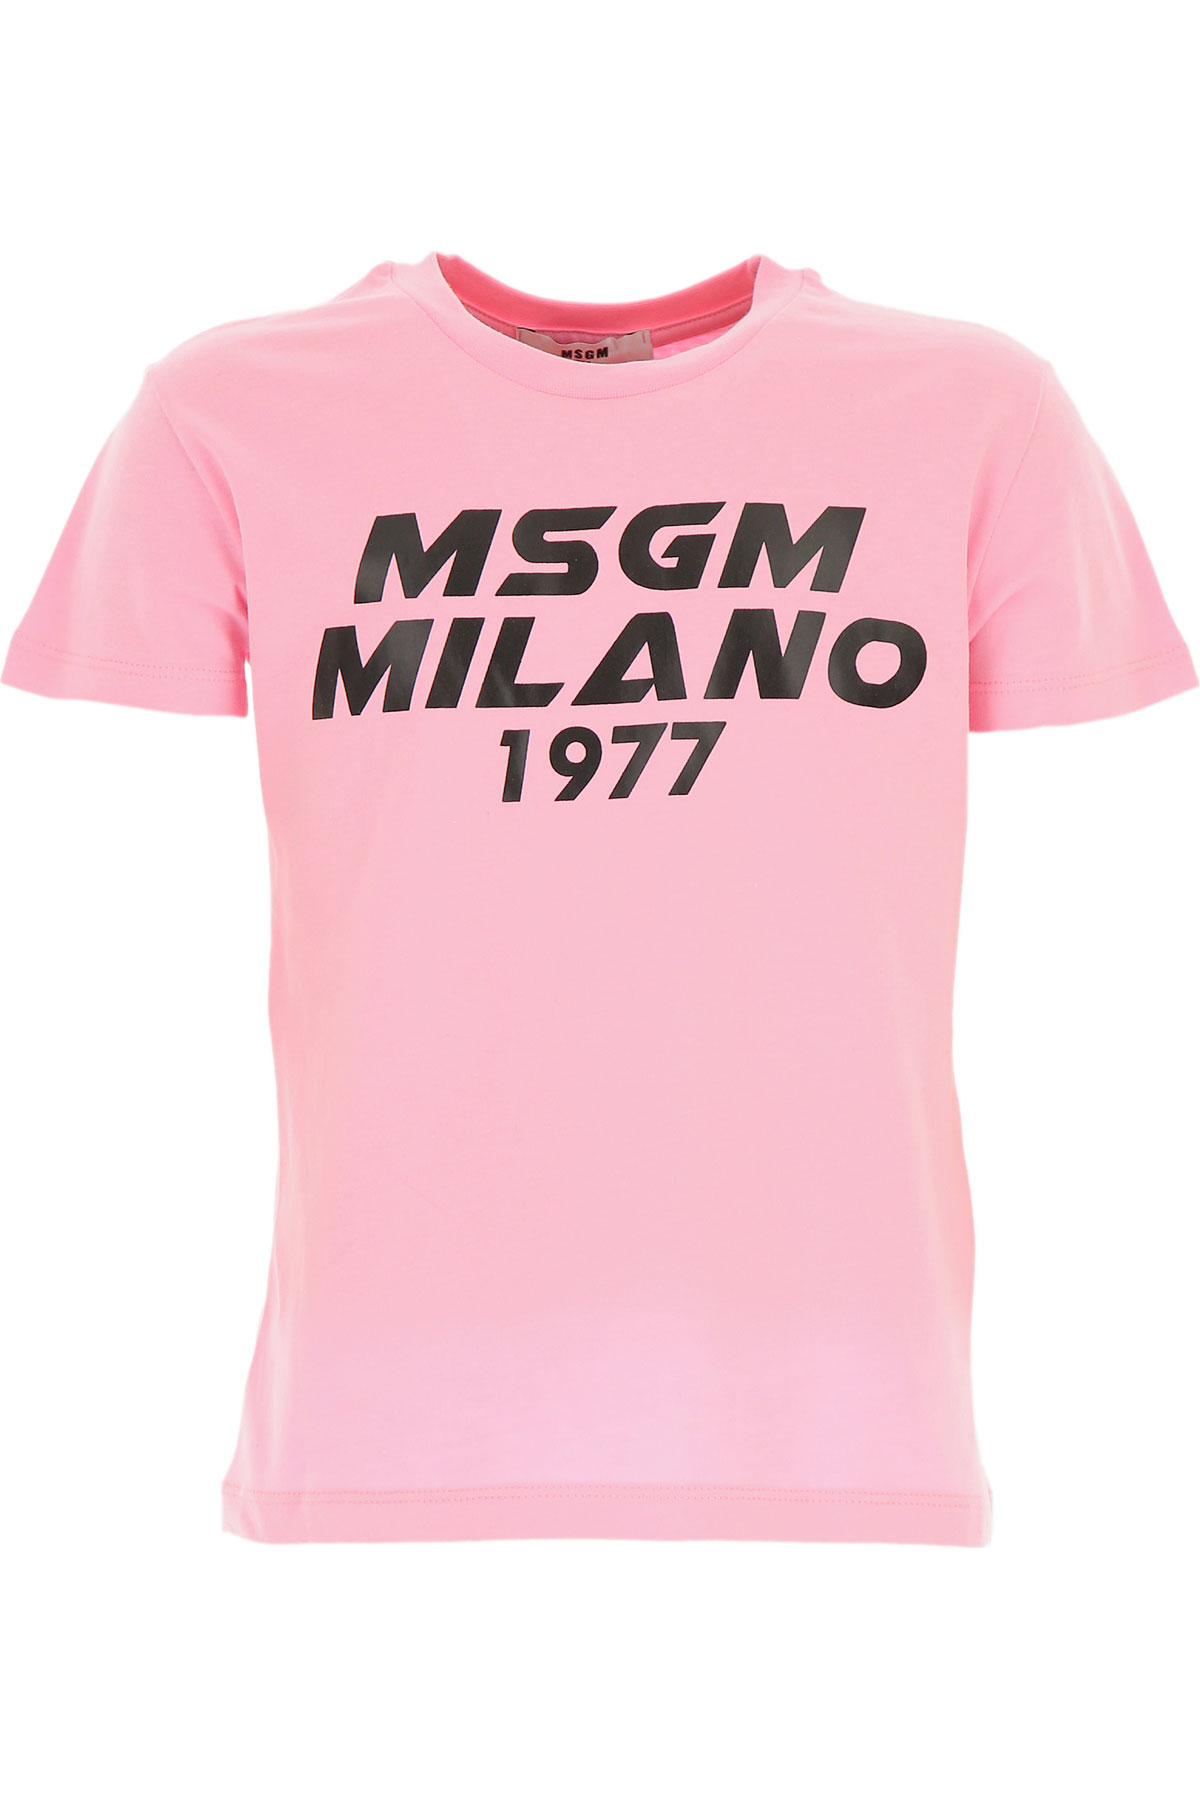 MSGM Kinder T-Shirt für Mädchen Günstig im Sale, Pink, Baumwolle, 2017, 4Y 6Y 8Y